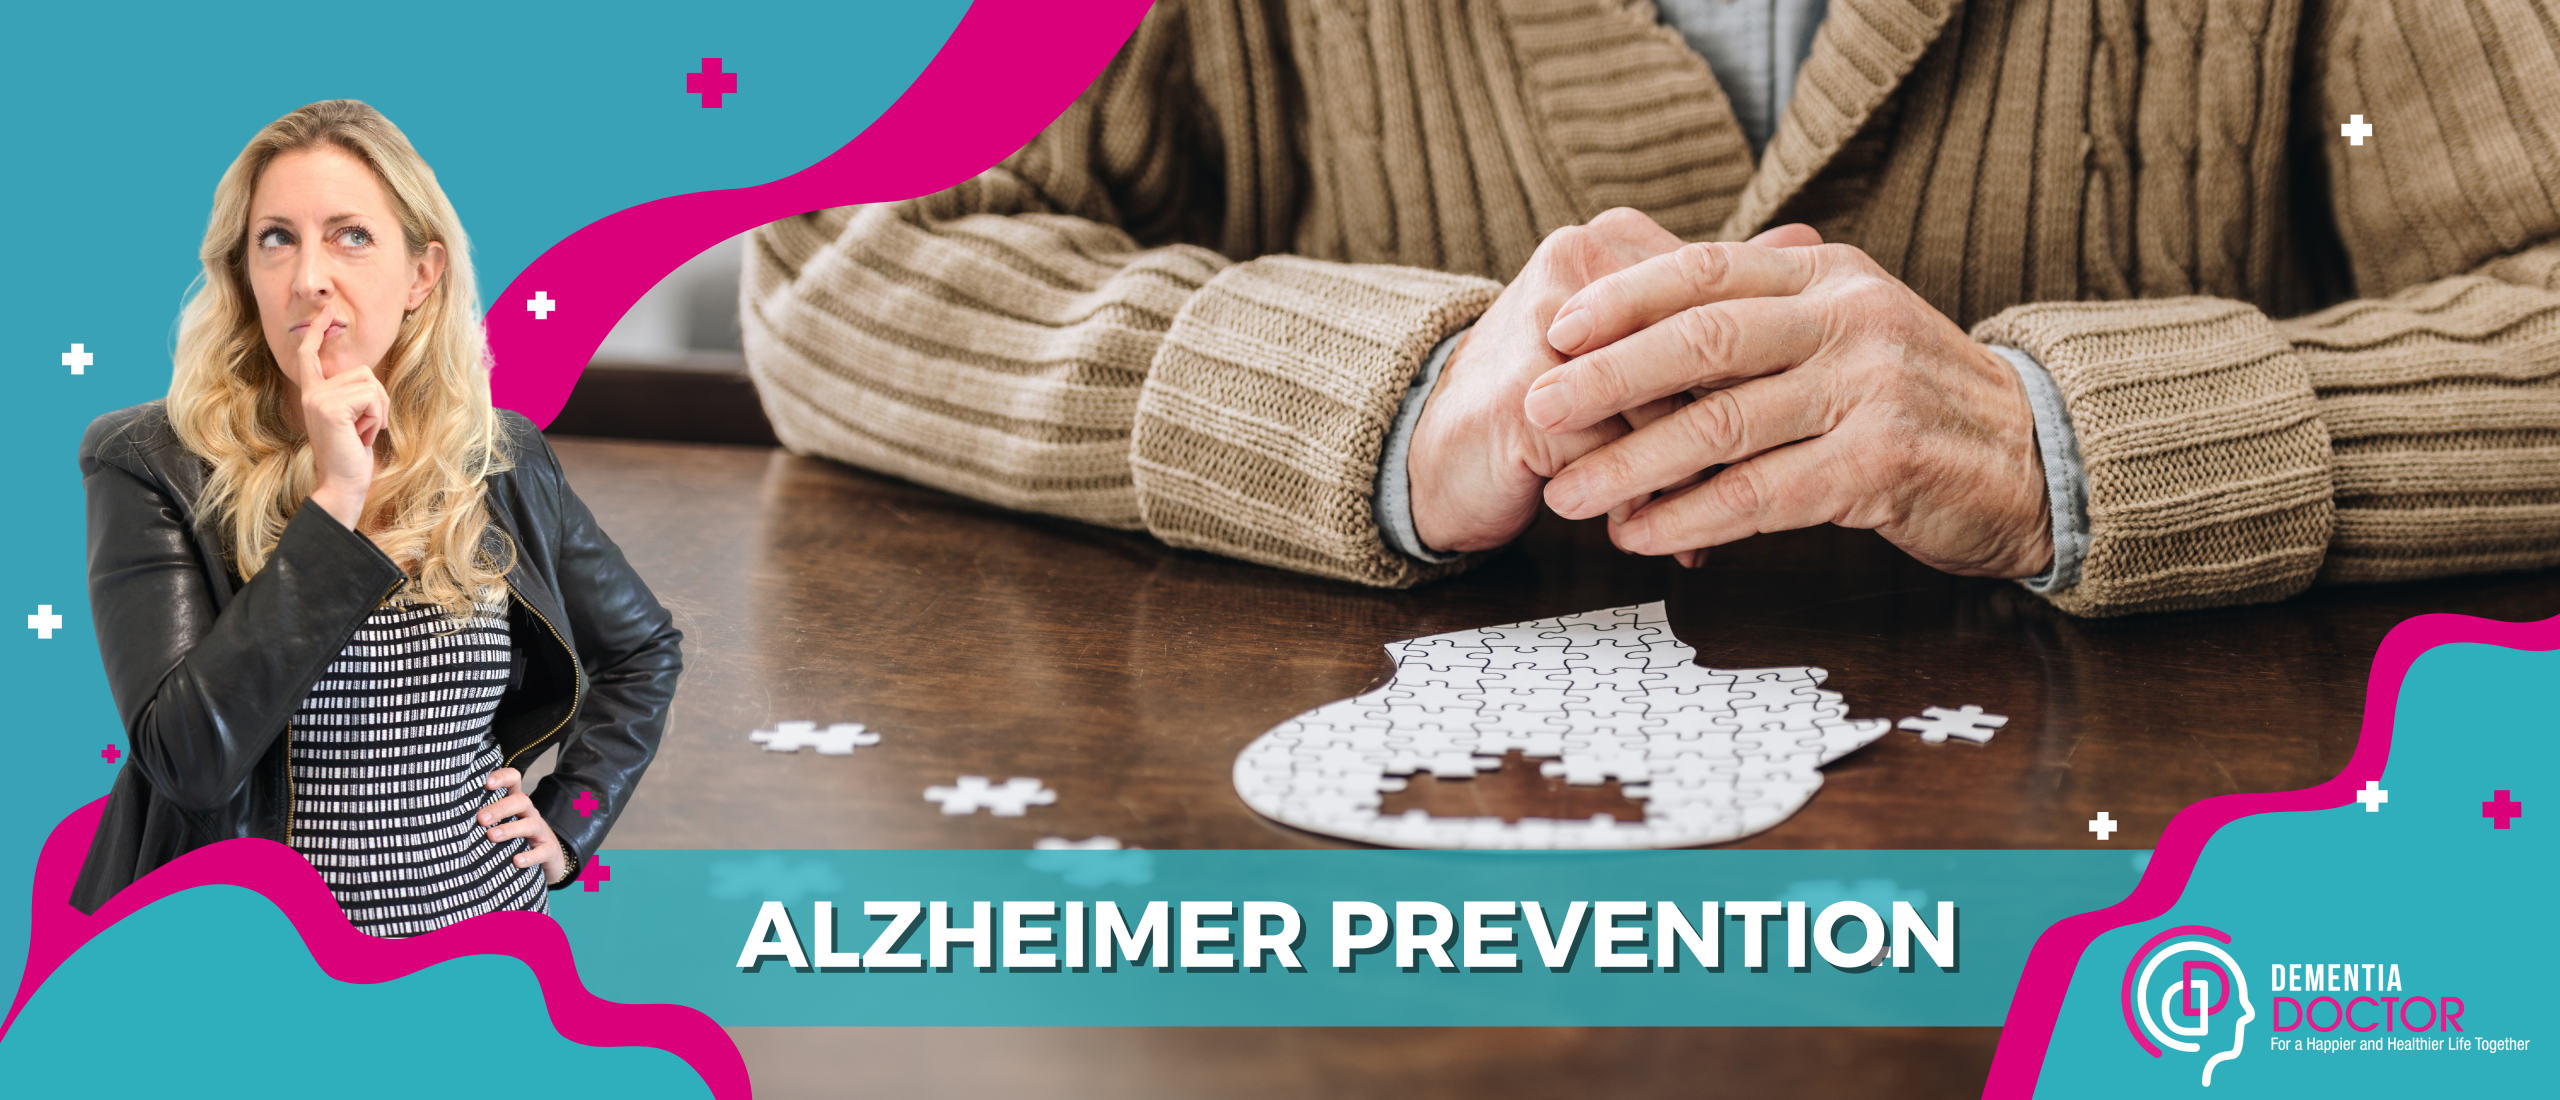 Alzheimer prevention